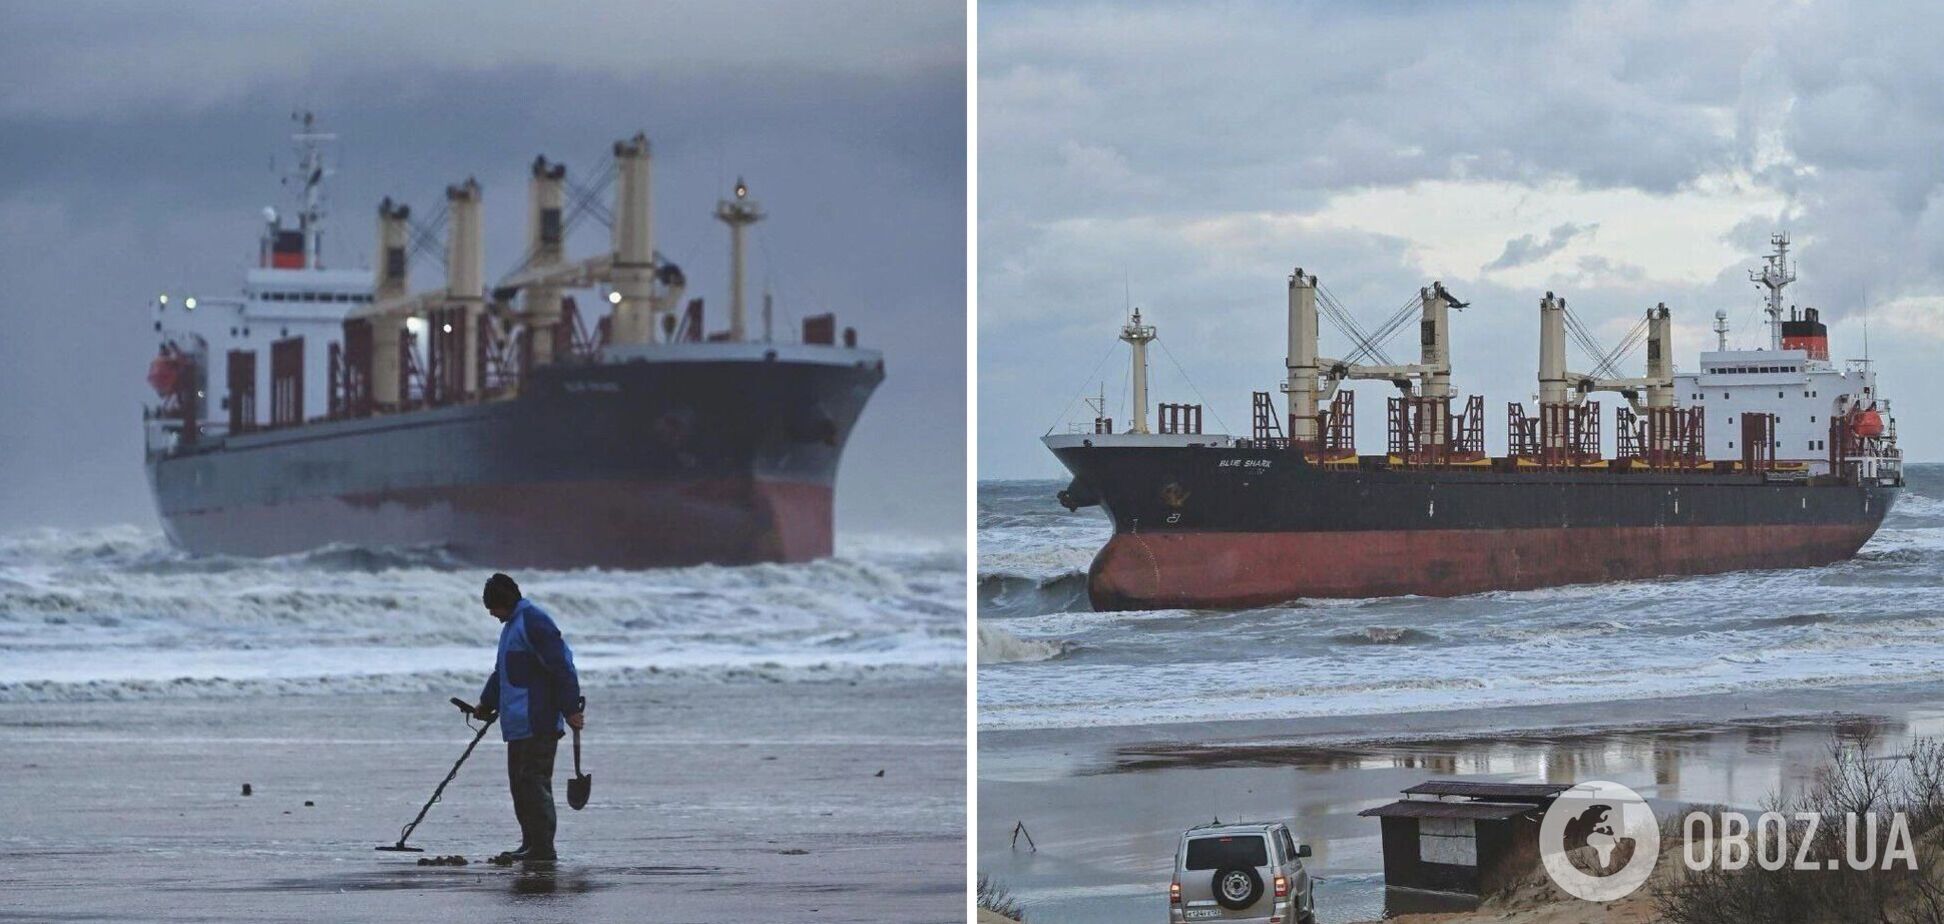 Шторм в Черном море выбросил на мель сухогруз, что вез зерно в Египет: появились подробности. Фото, видео